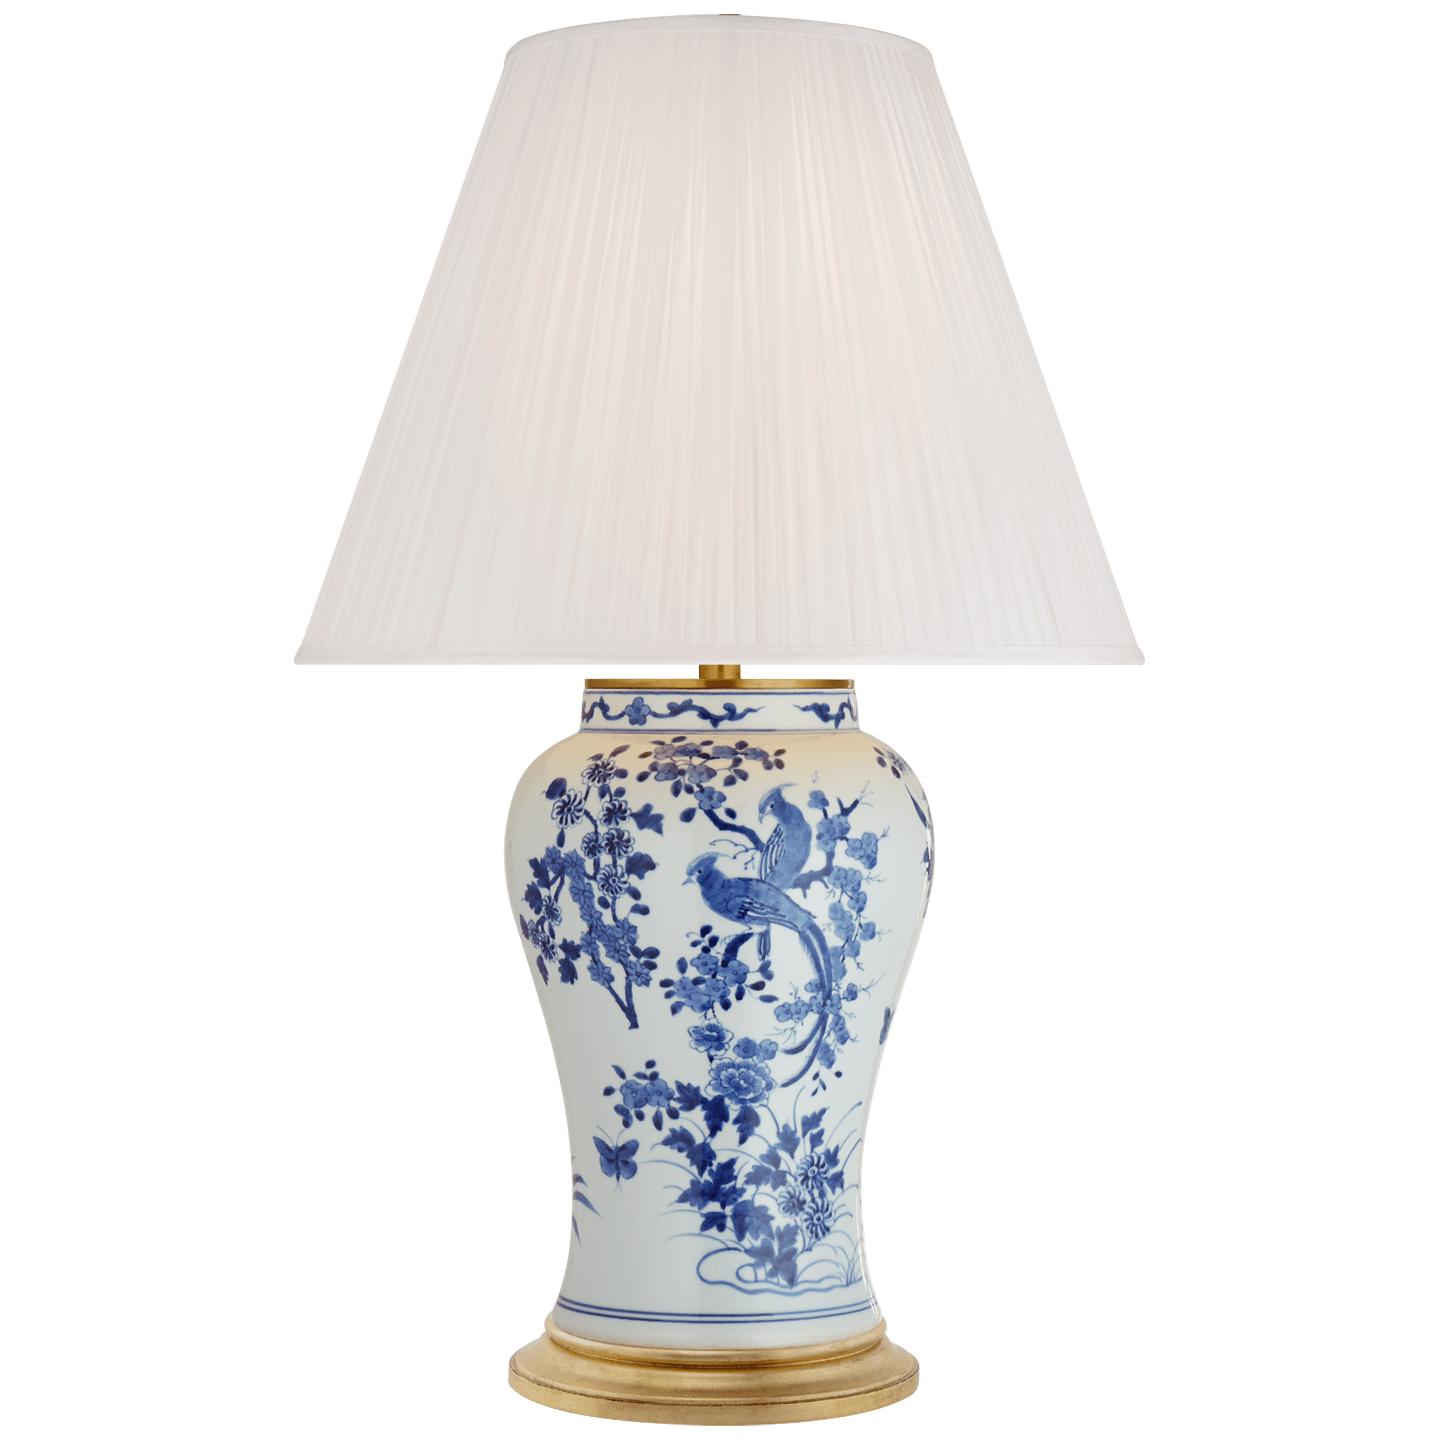 Купить Настольная лампа Blythe Medium Table Lamp в интернет-магазине roooms.ru